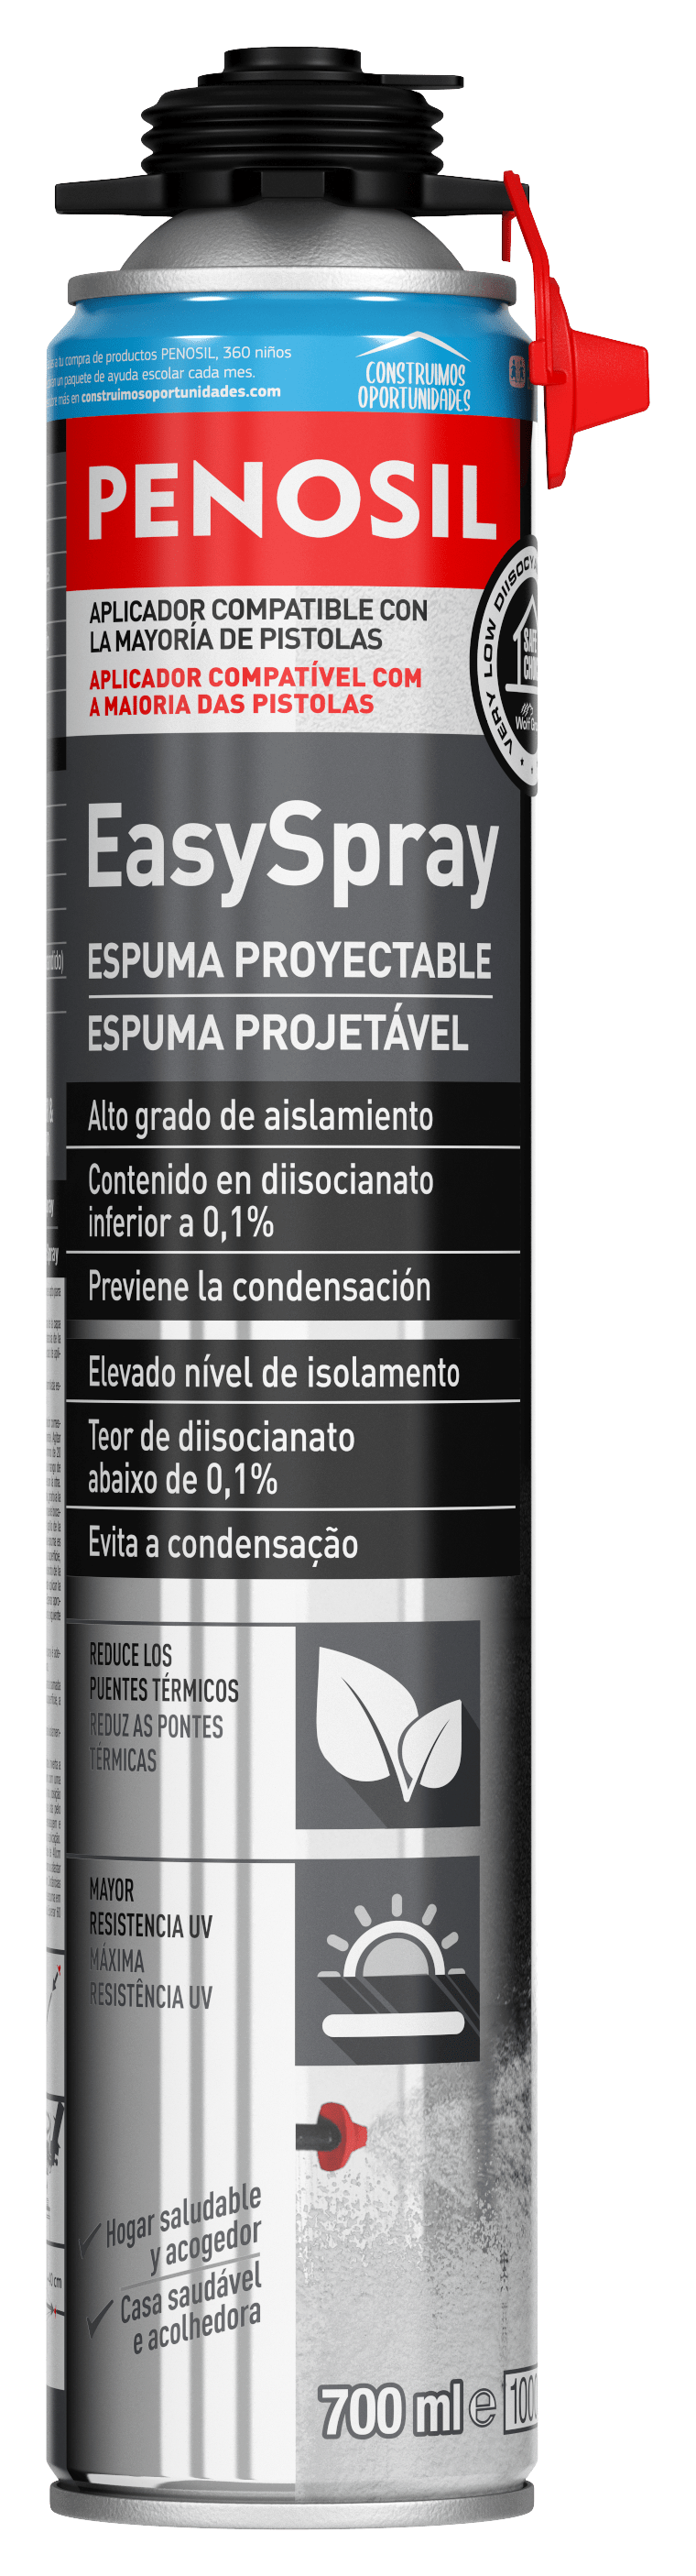 Espuma Proyectable Penosil Premium Con Baquilla - Ferretería Dos clavos